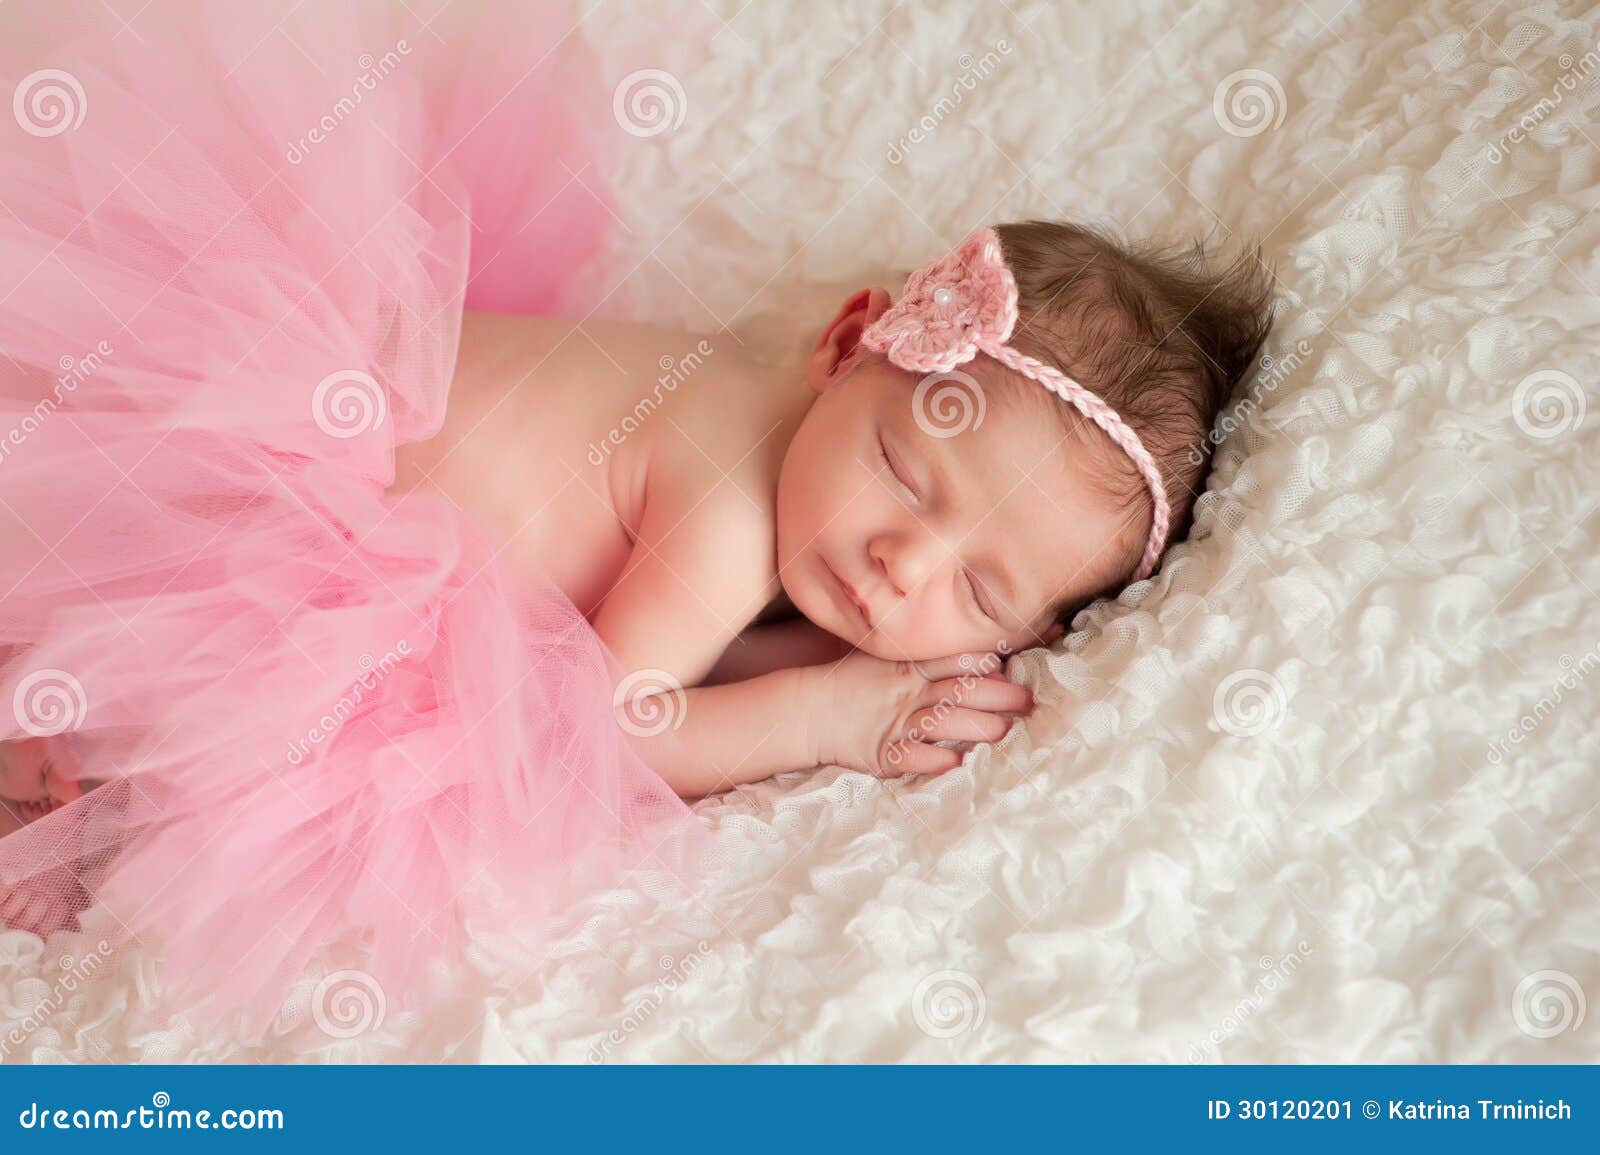 519 New baby headband newborn 245 Newborn Baby Girl Wearing A Pink Tutu Stock Image   Image: 30120201 